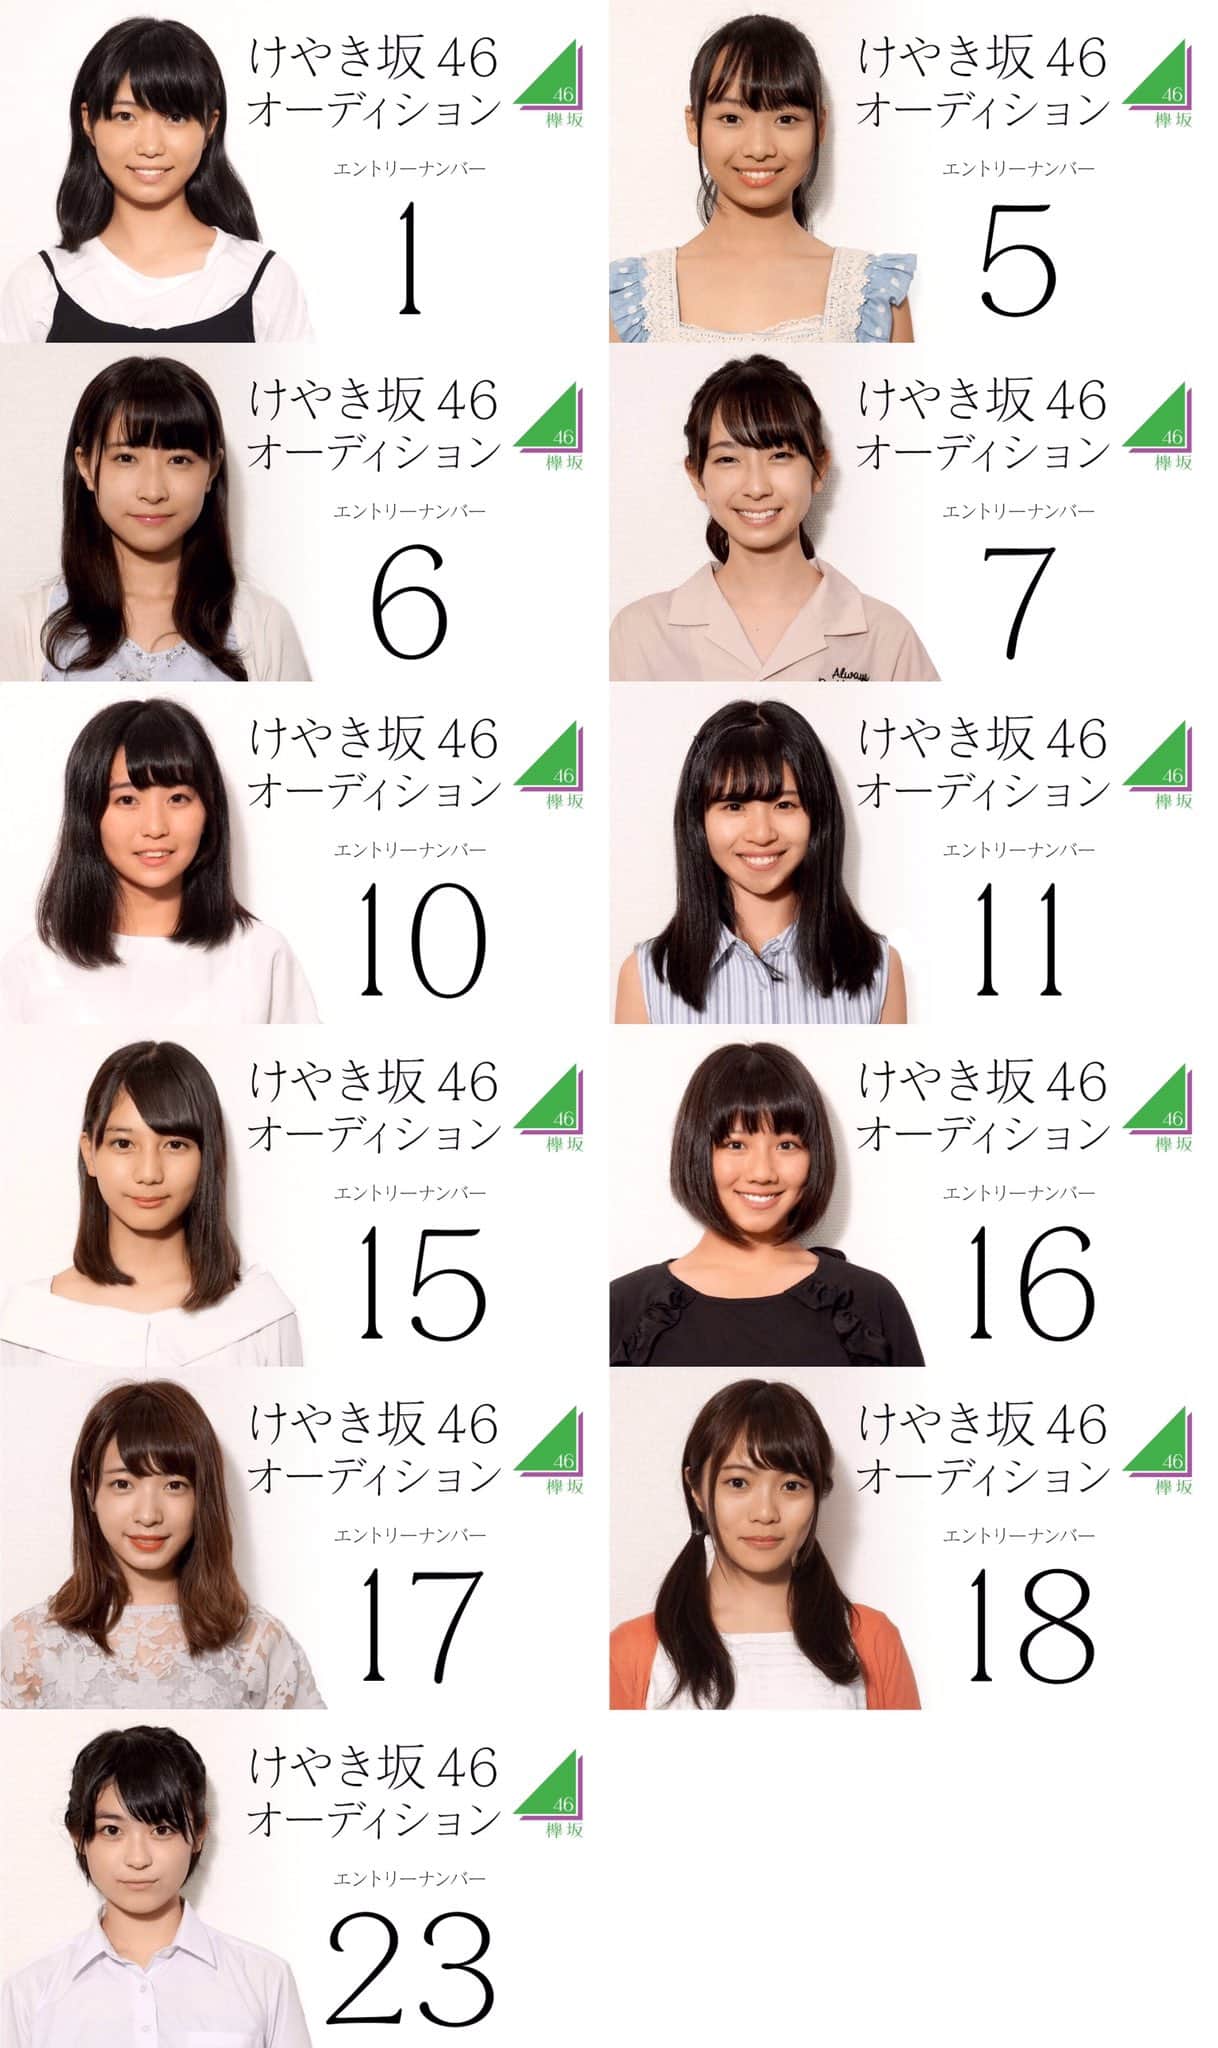 欅坂46 けやき坂46新メンバー候補者11名の顔写真が公開 オーディションshowroom部門が18時よりスタート 櫻坂46まとめきんぐだむ